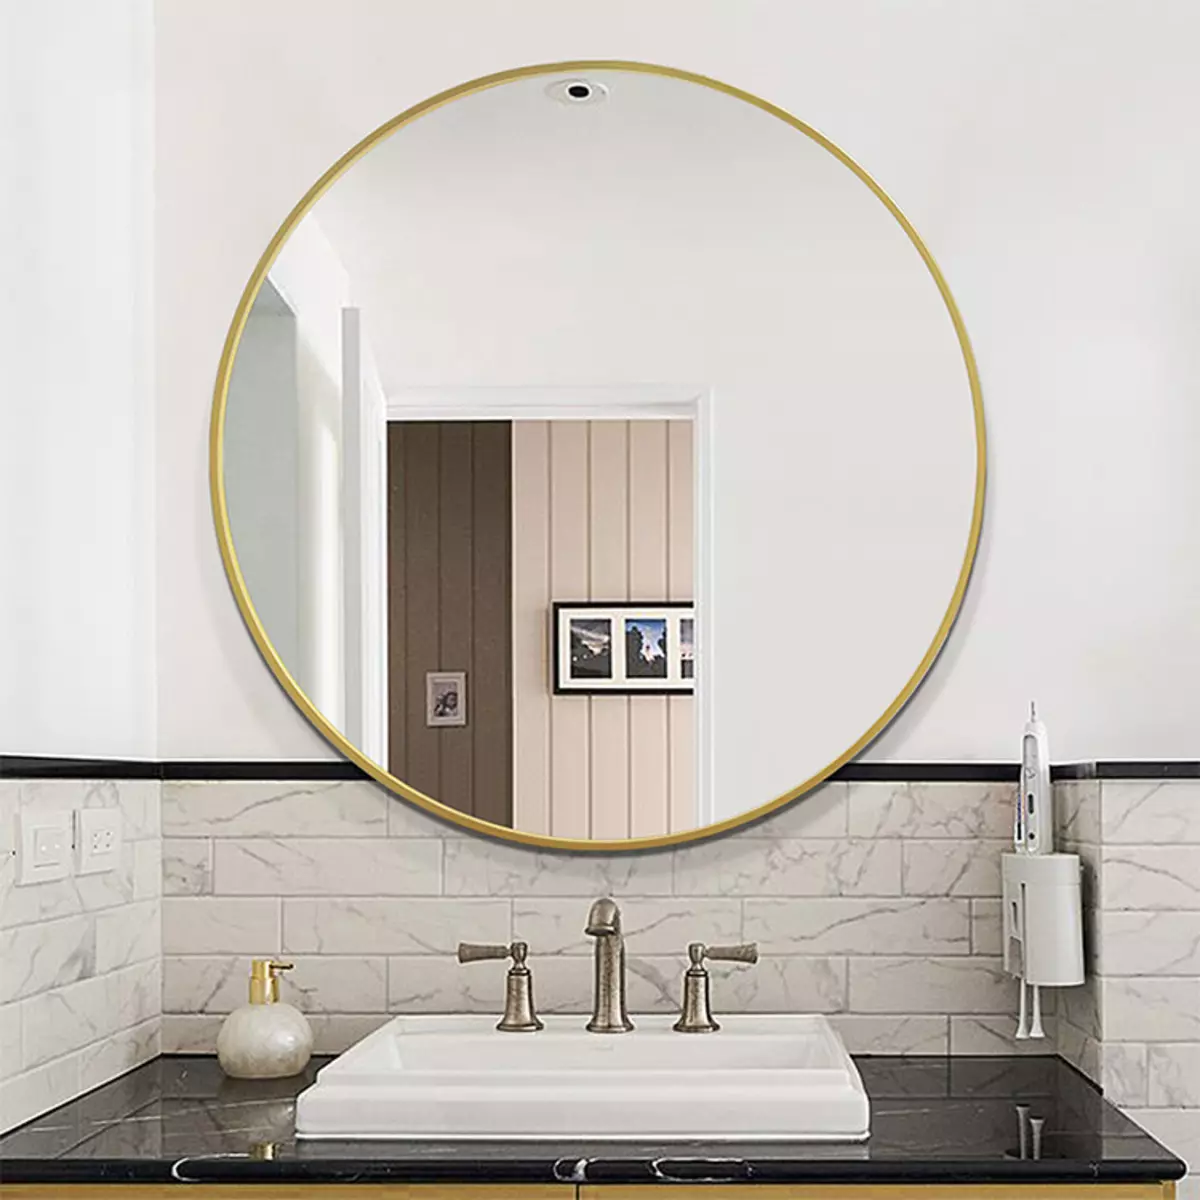 Miroir rond dans la salle de bain: miroirs design dans un cadre en bois, miroirs ronds de couleur noire et autre pour la salle de bain 10427_9